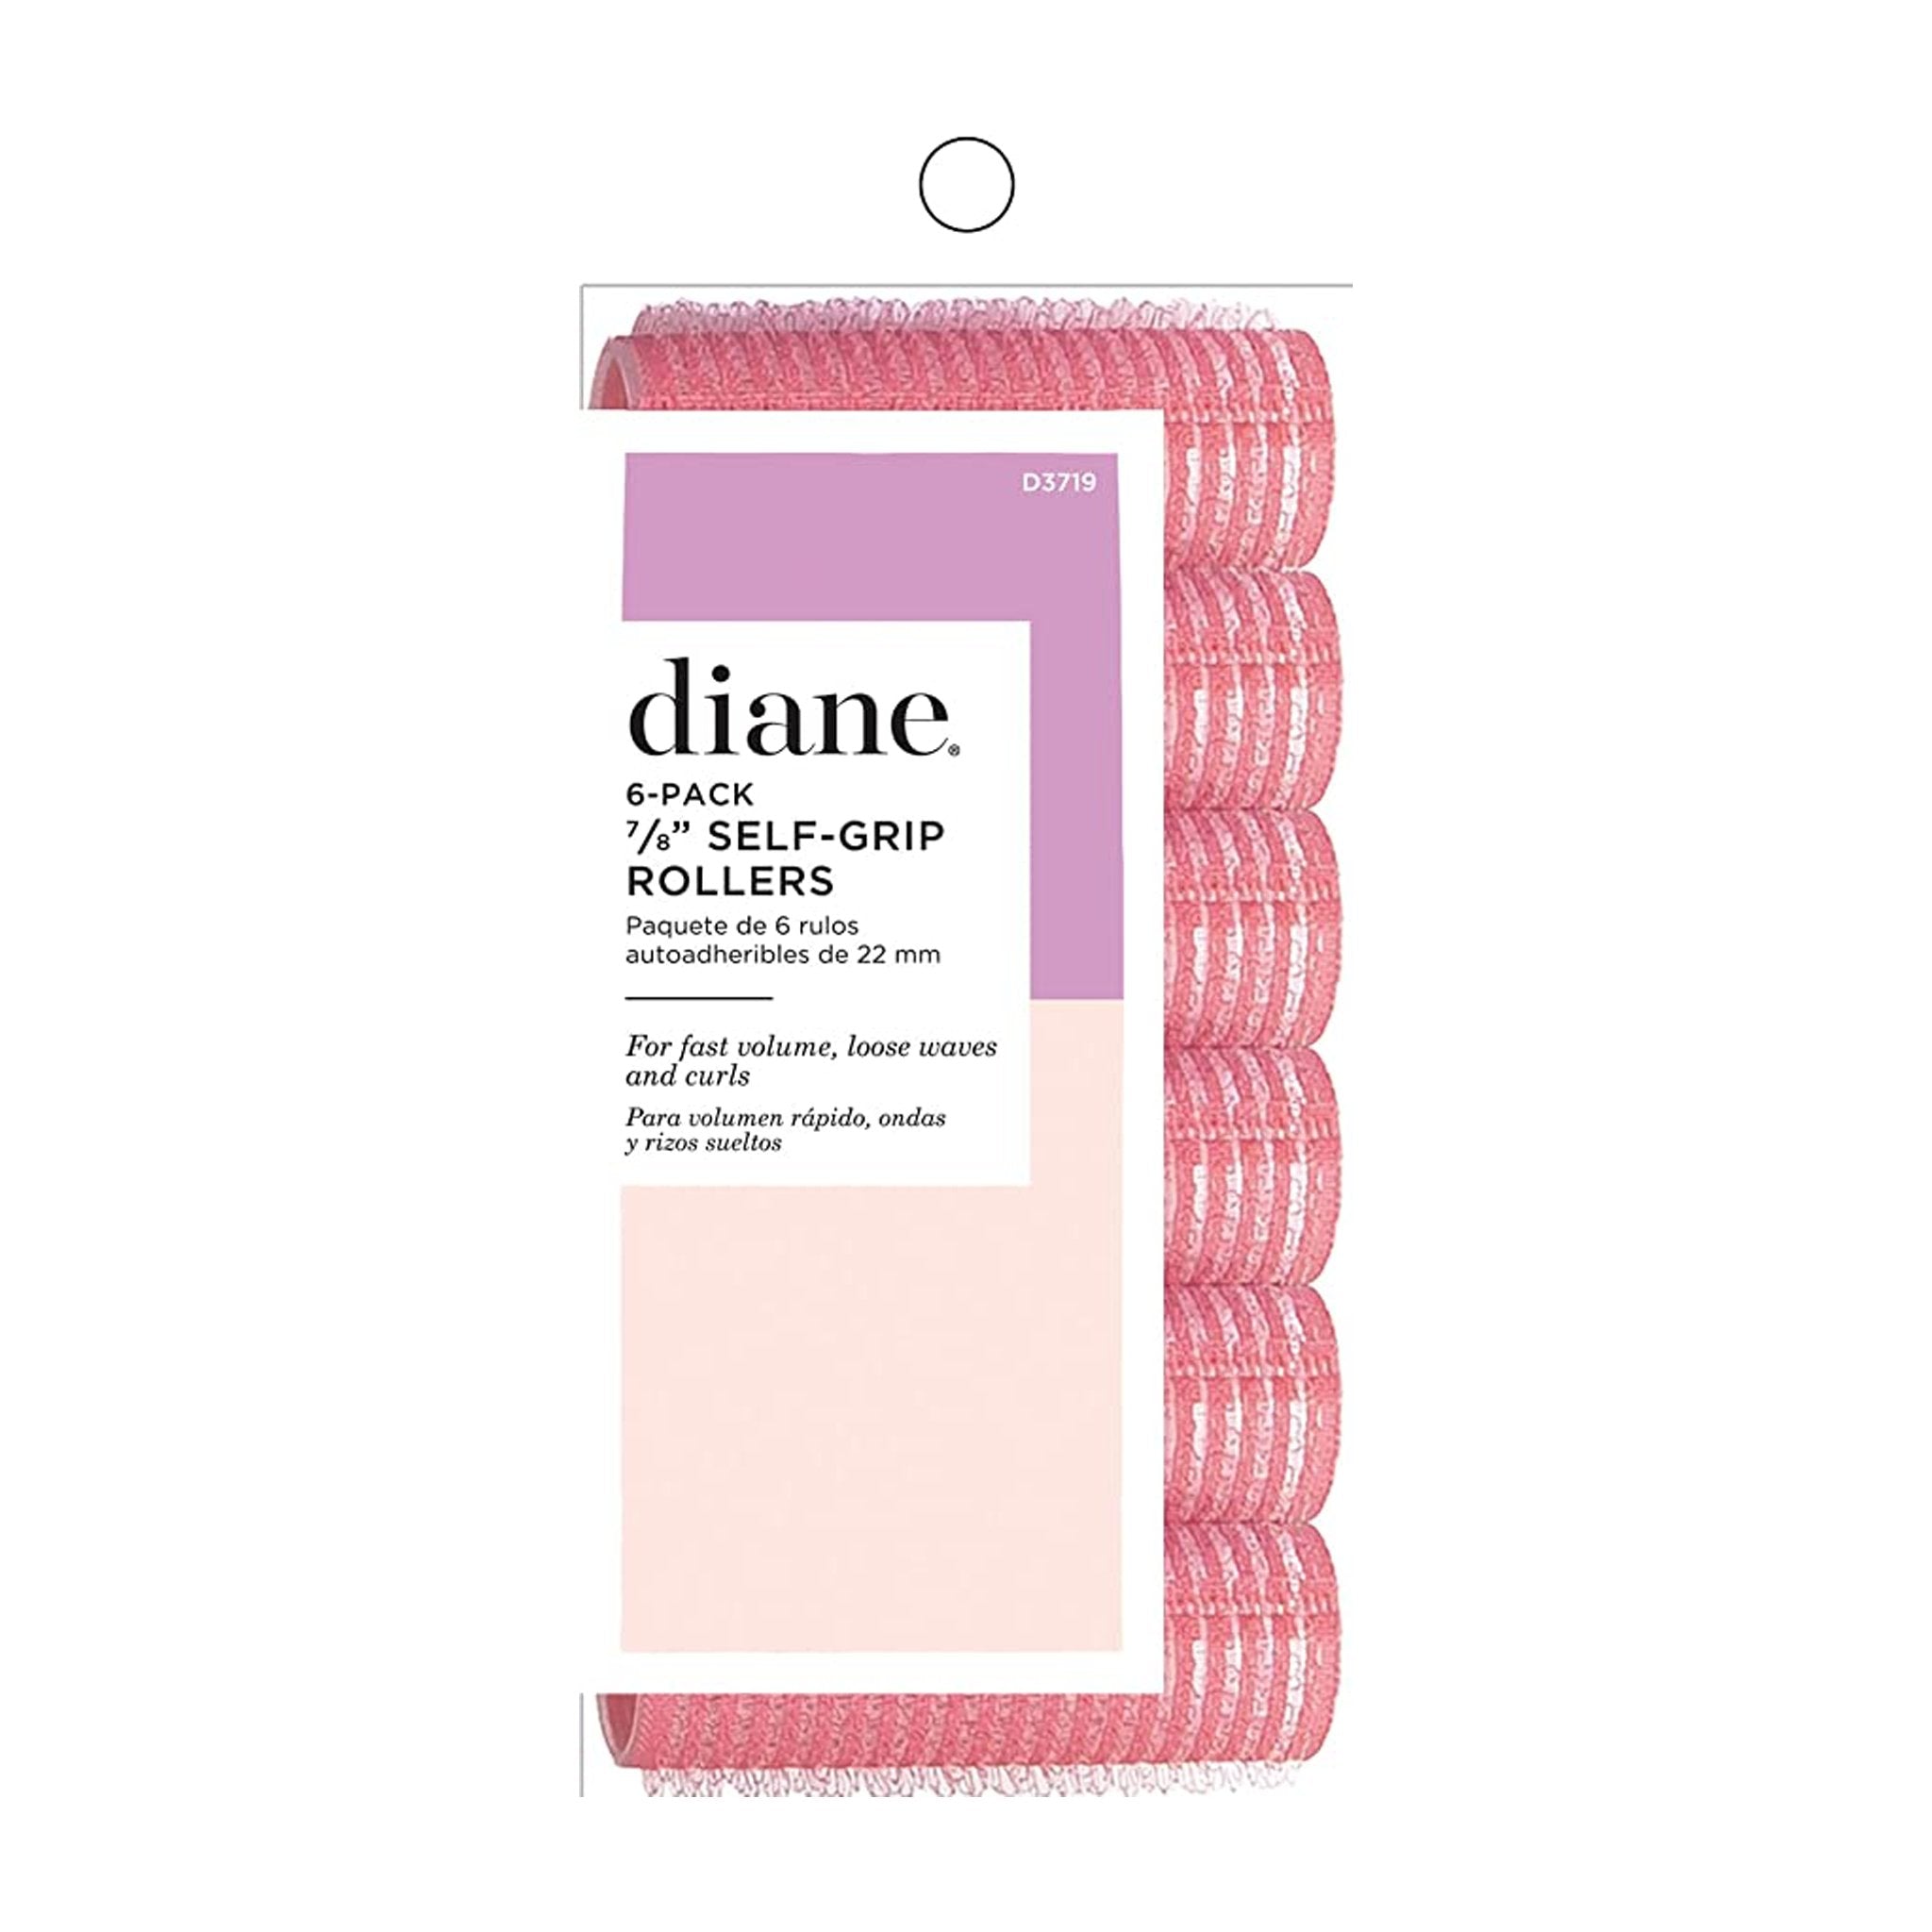 Diane. Rouleaux en Velcro Roses 7/8" - Pqt. 6 - Concept C. Shop